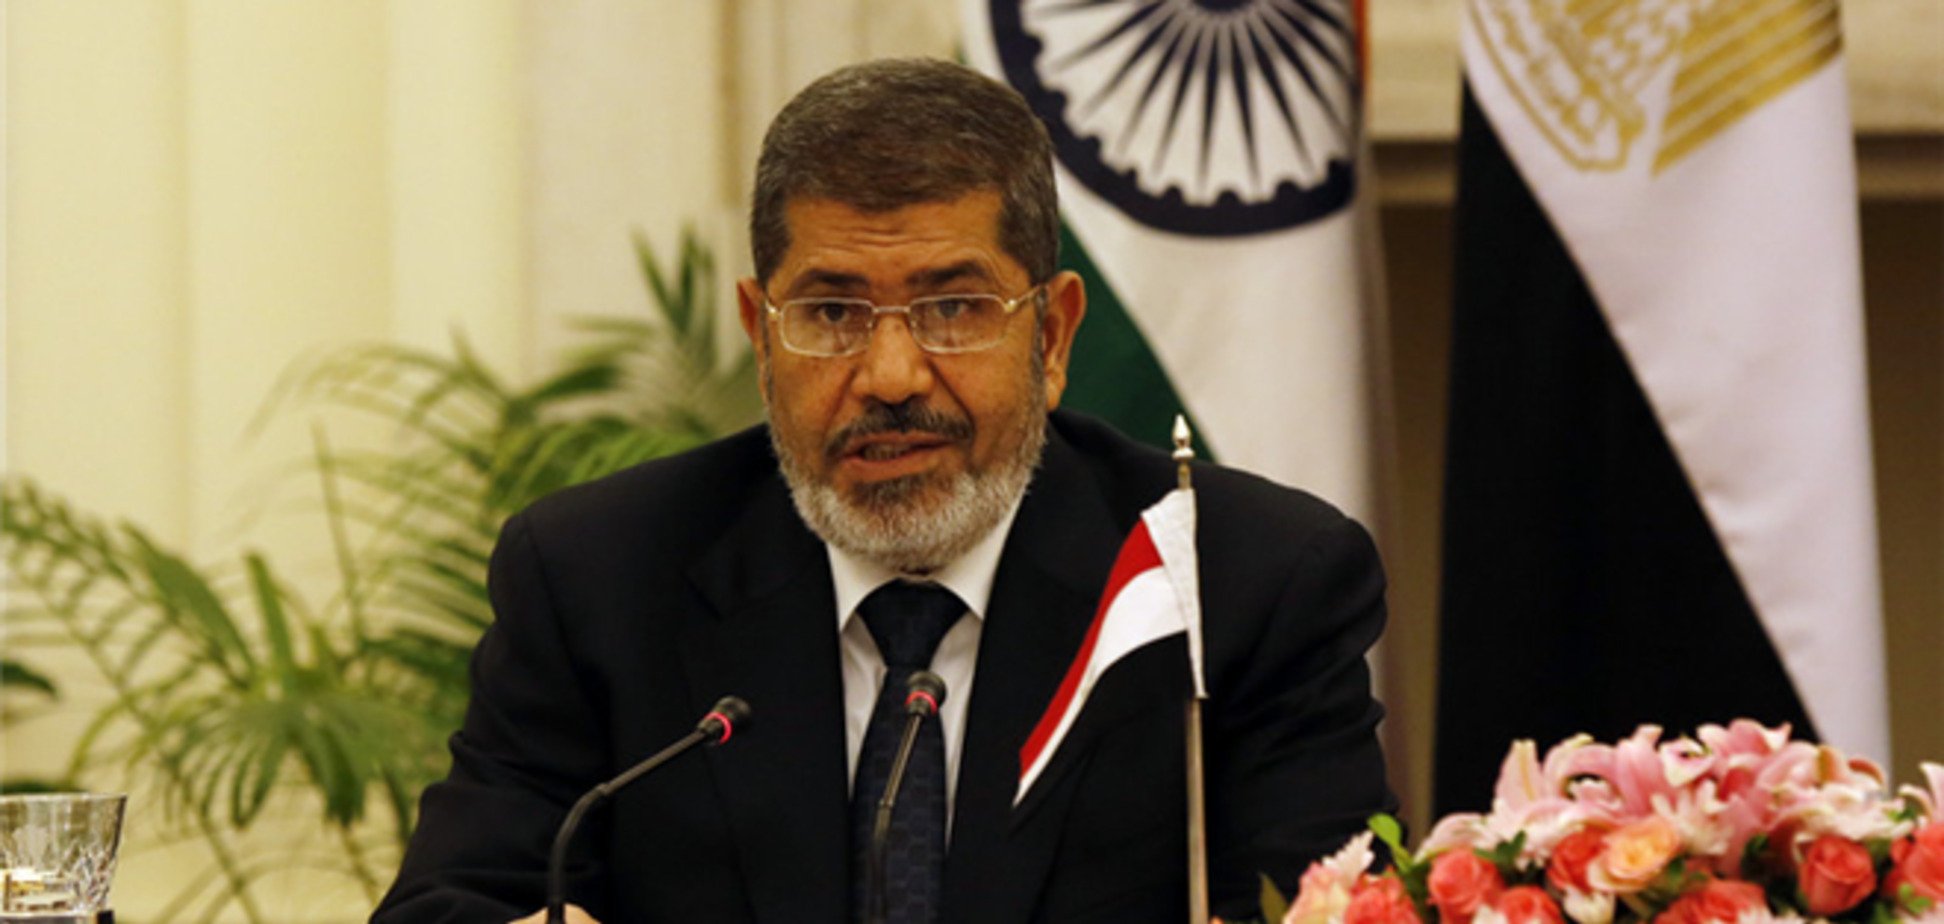 Семья Мурси обвинила армию в его похищении